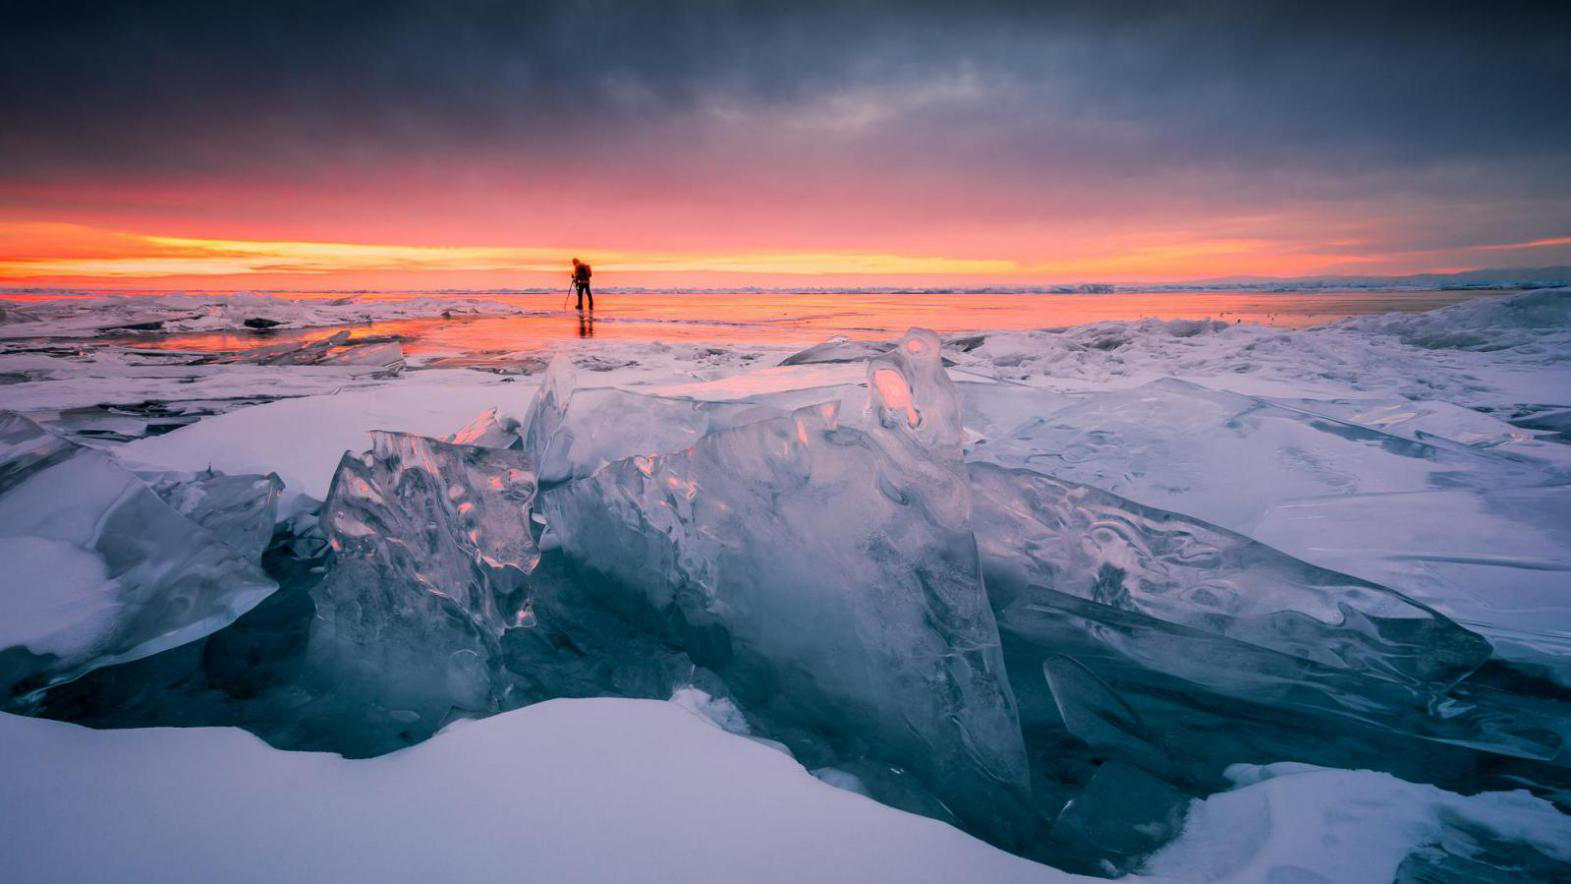 “西伯利亚明眸”贝加尔湖 摄影师的冰蓝之旅